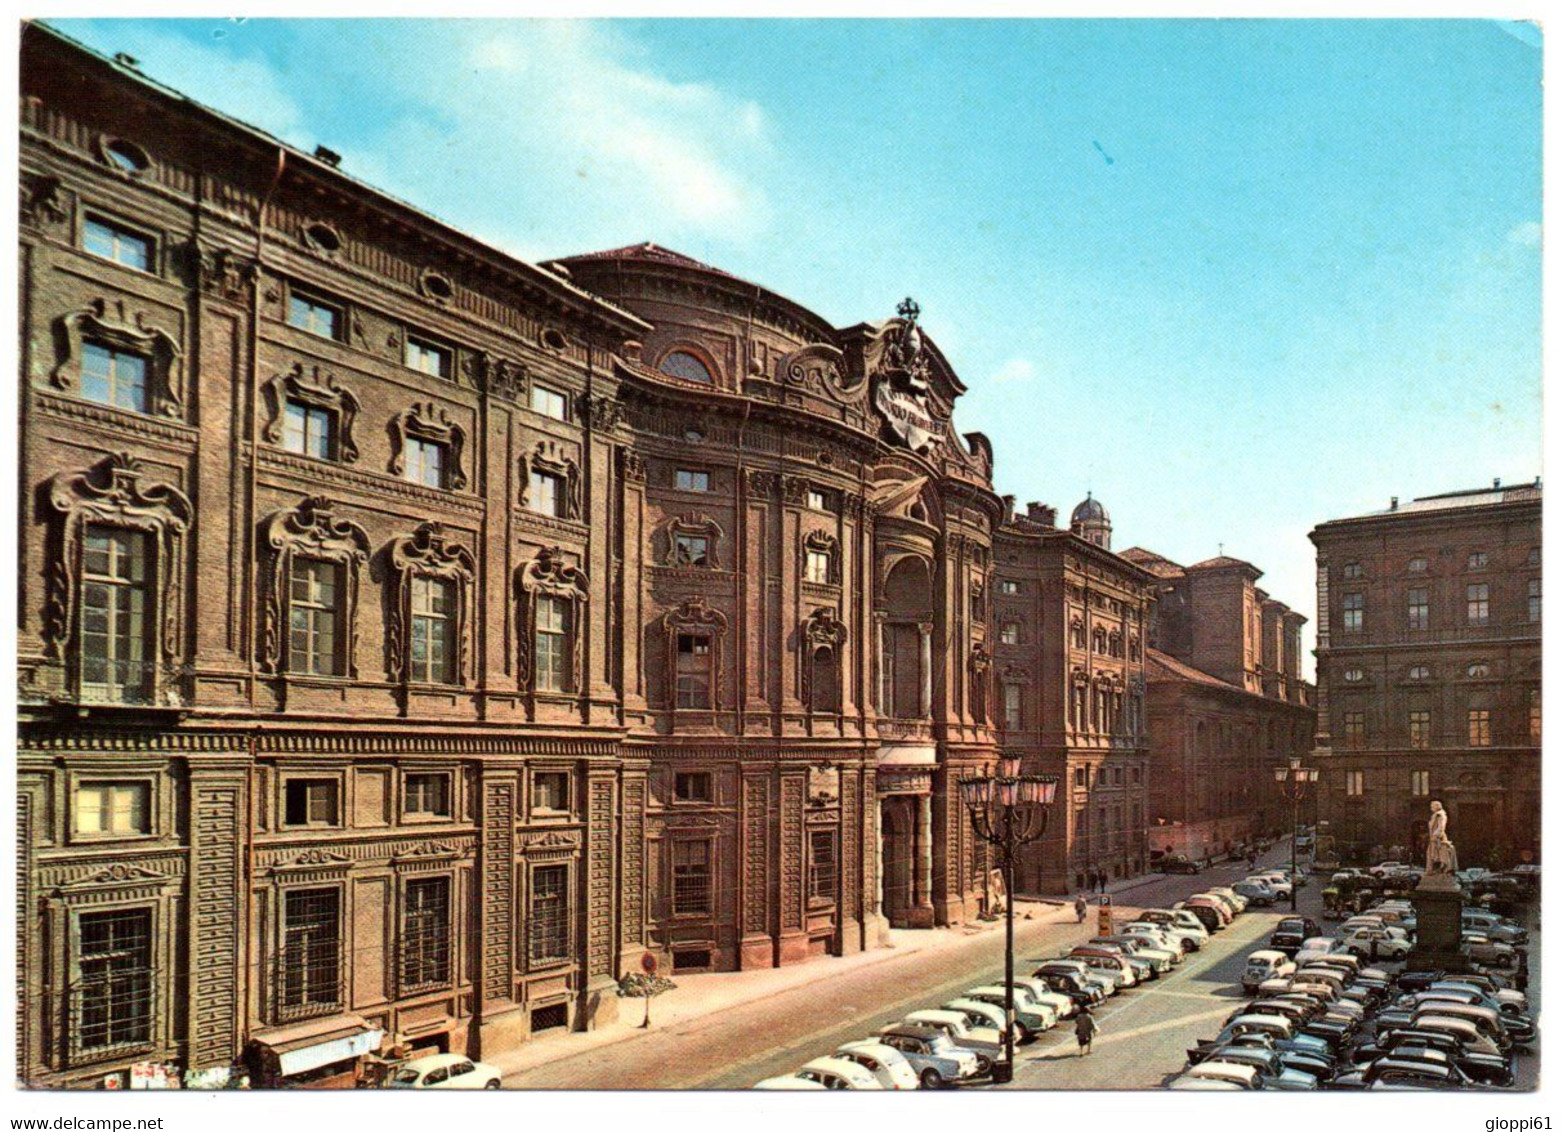 Torino - Palazzo Carignano - Palazzo Carignano